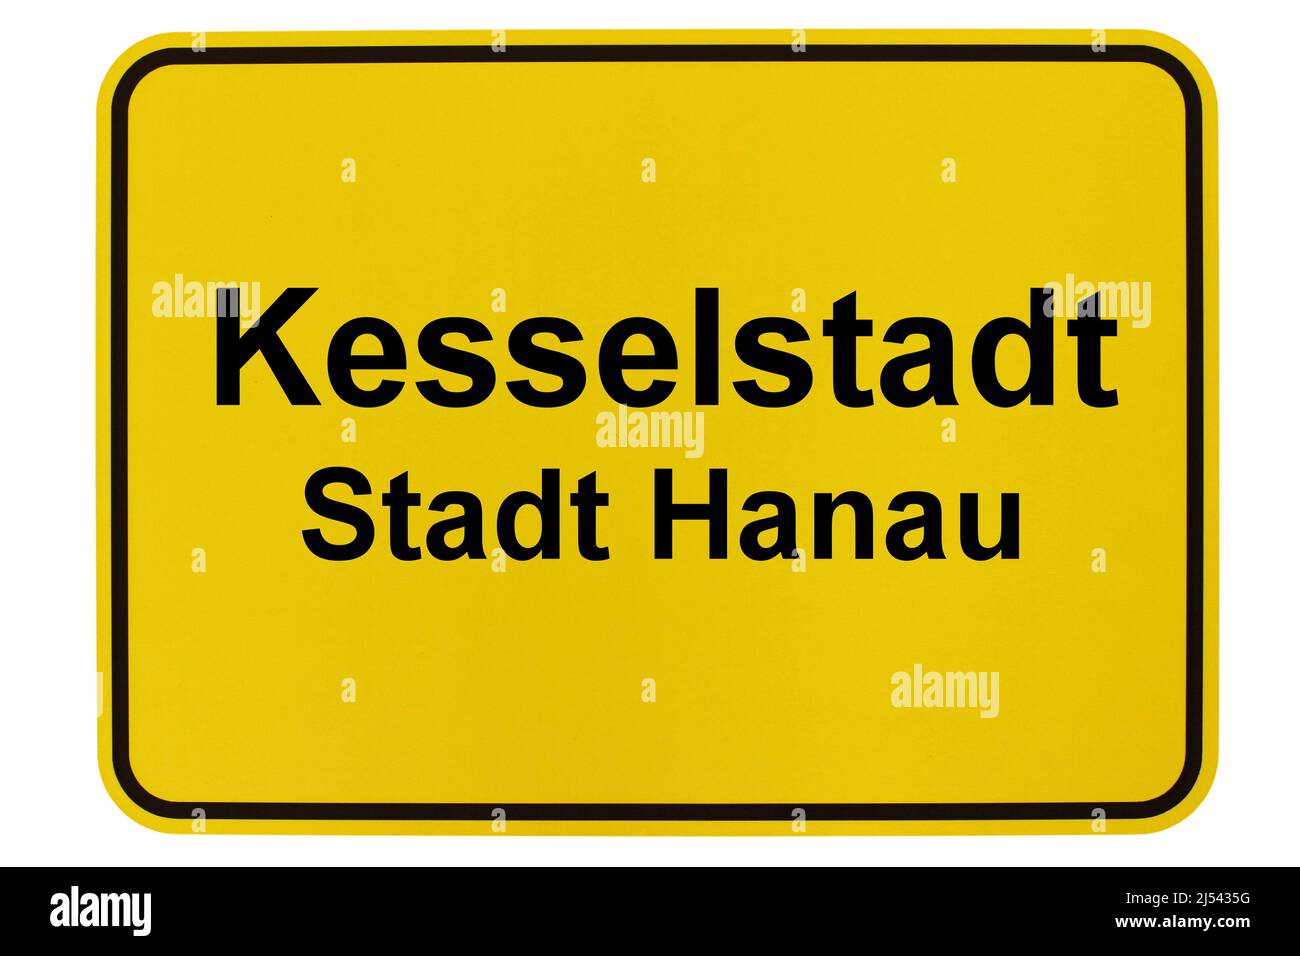 Impressionen Aus Kesselstadt, einem Stadtteil von Hanau in Hessen Stock Photo